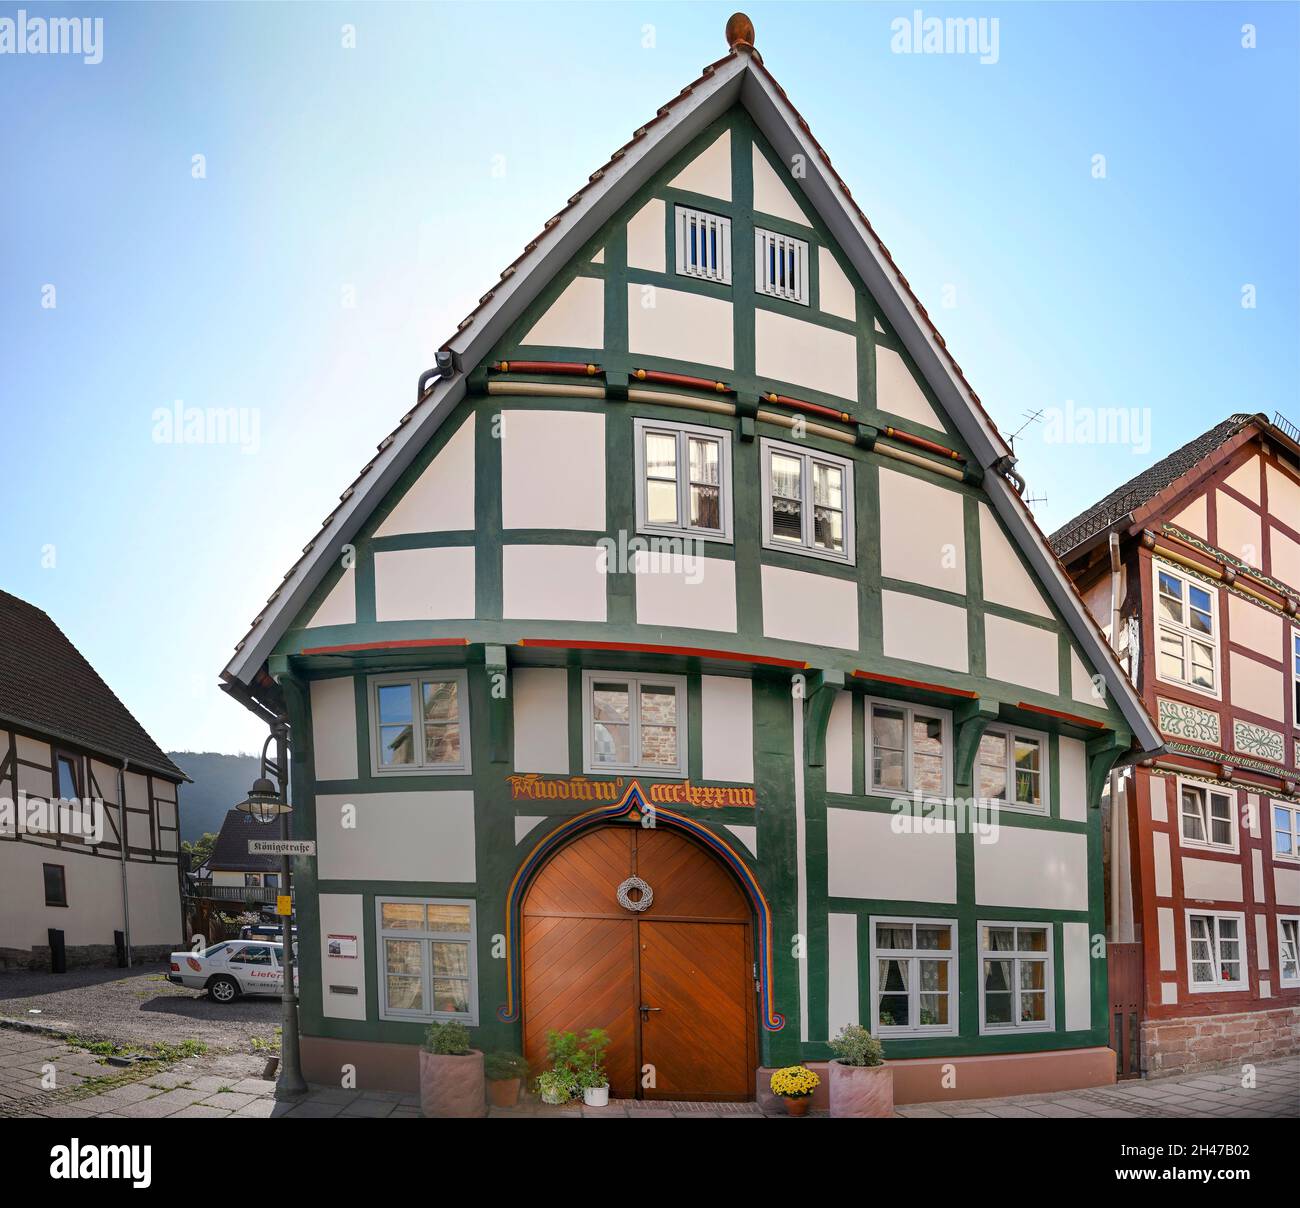 Ältestes Wohnhaus von 1484, Königstraße, Münchhausenstadt Bodenwerder, Niedersachsen, Deutschland Foto Stock